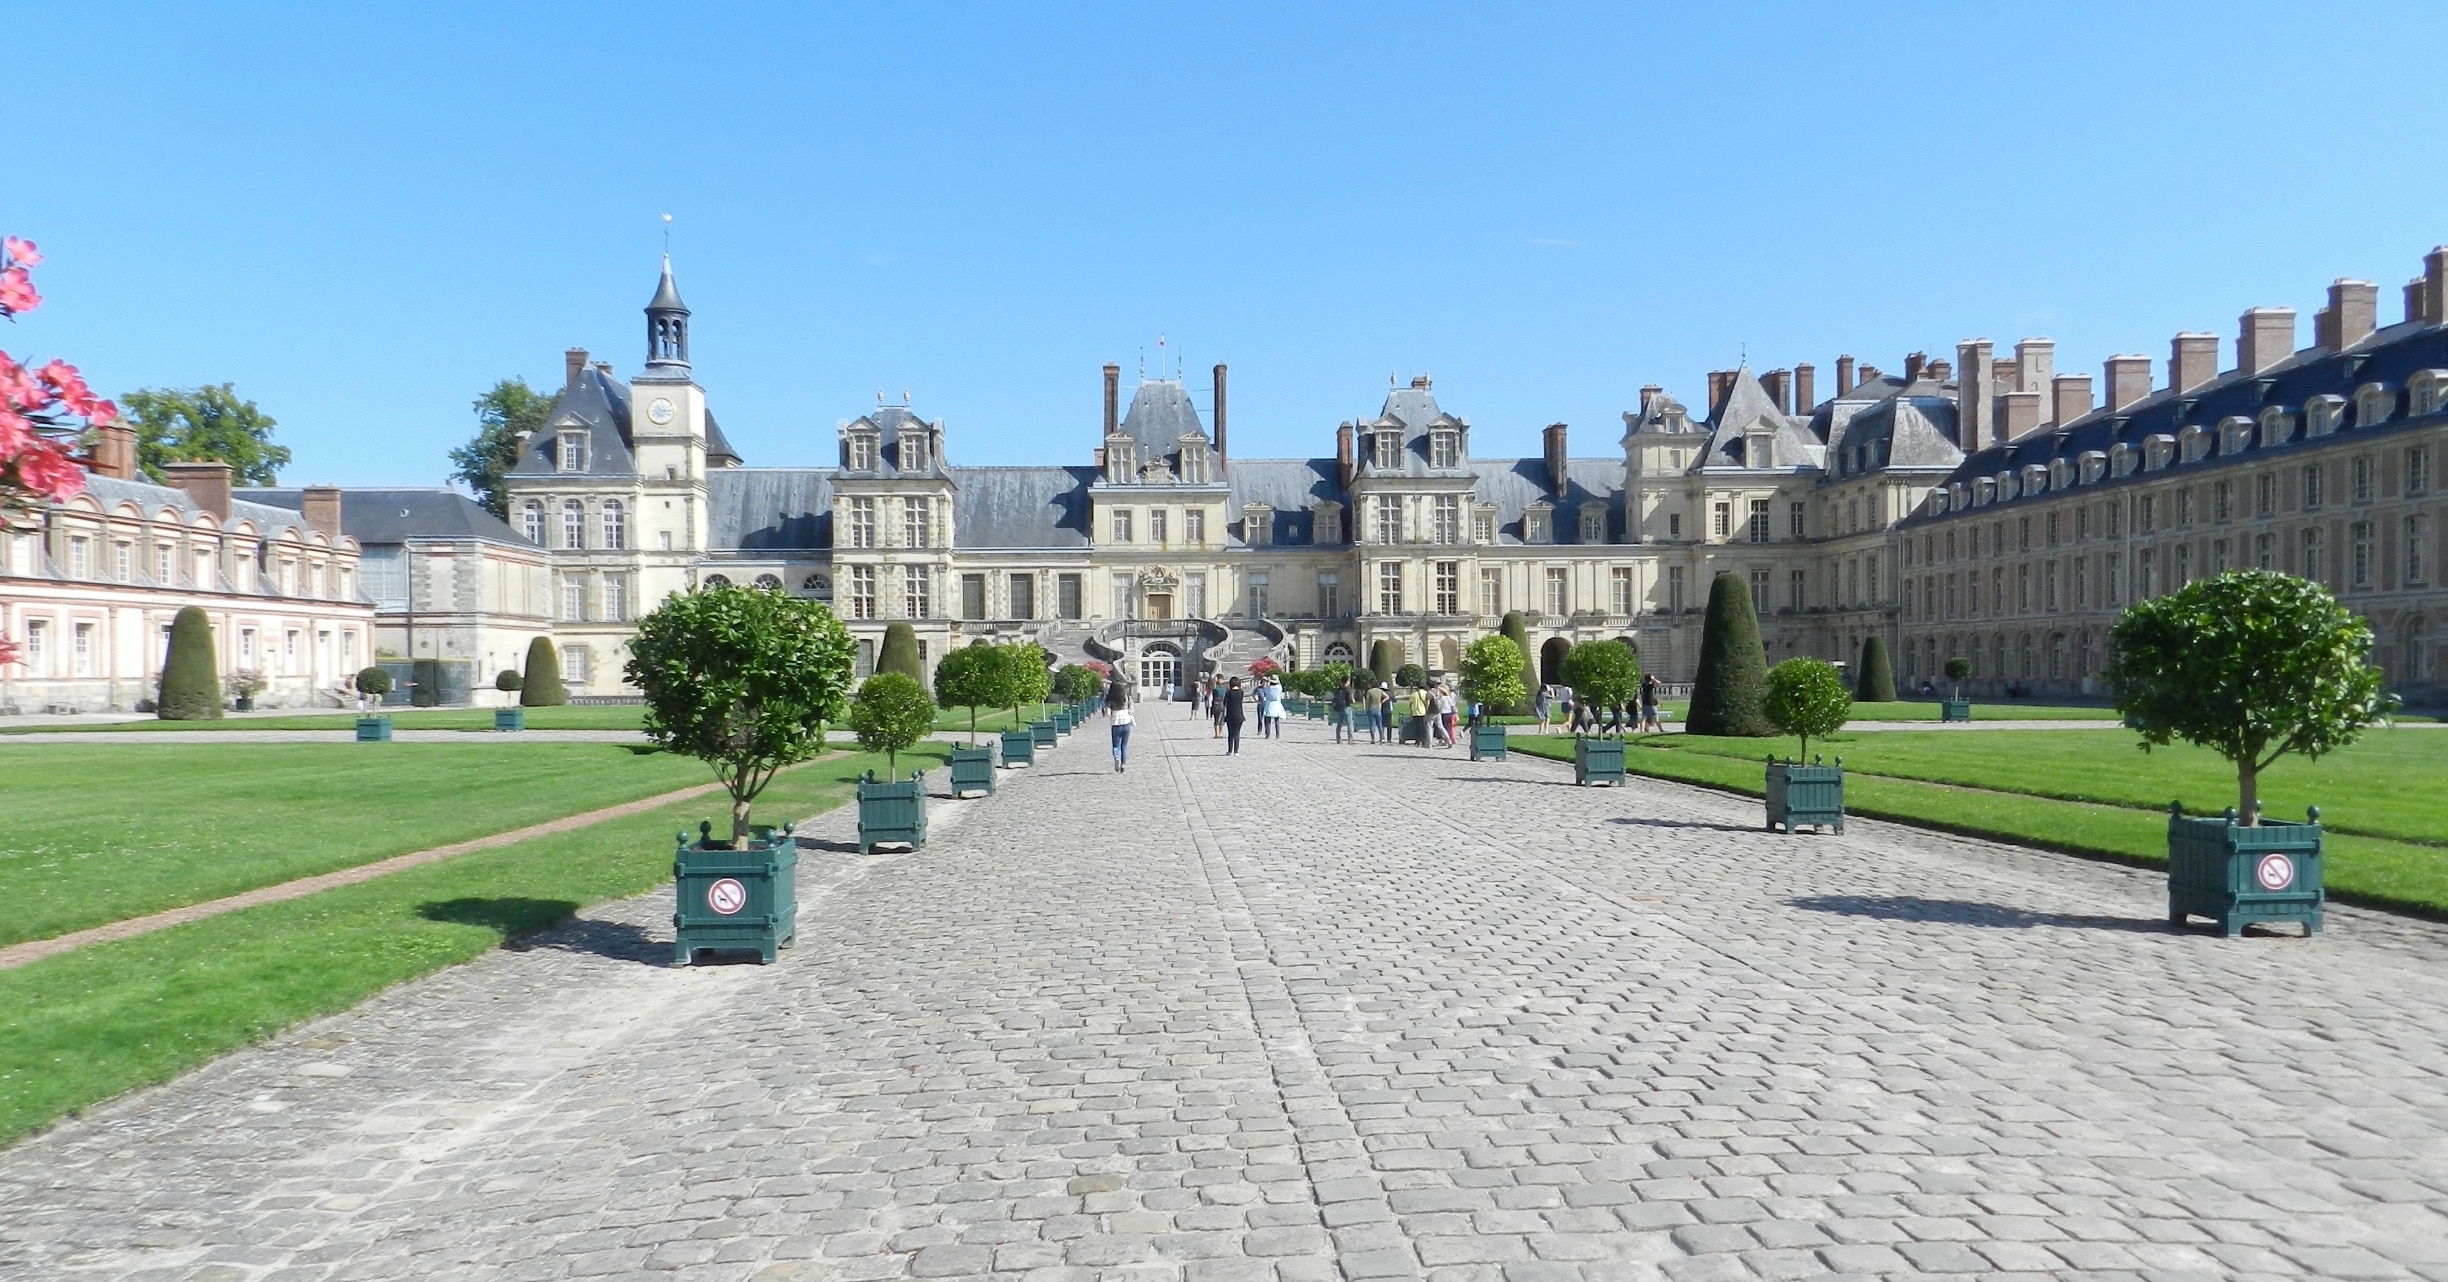 Chateau de Fontainebleau - Paris Must See